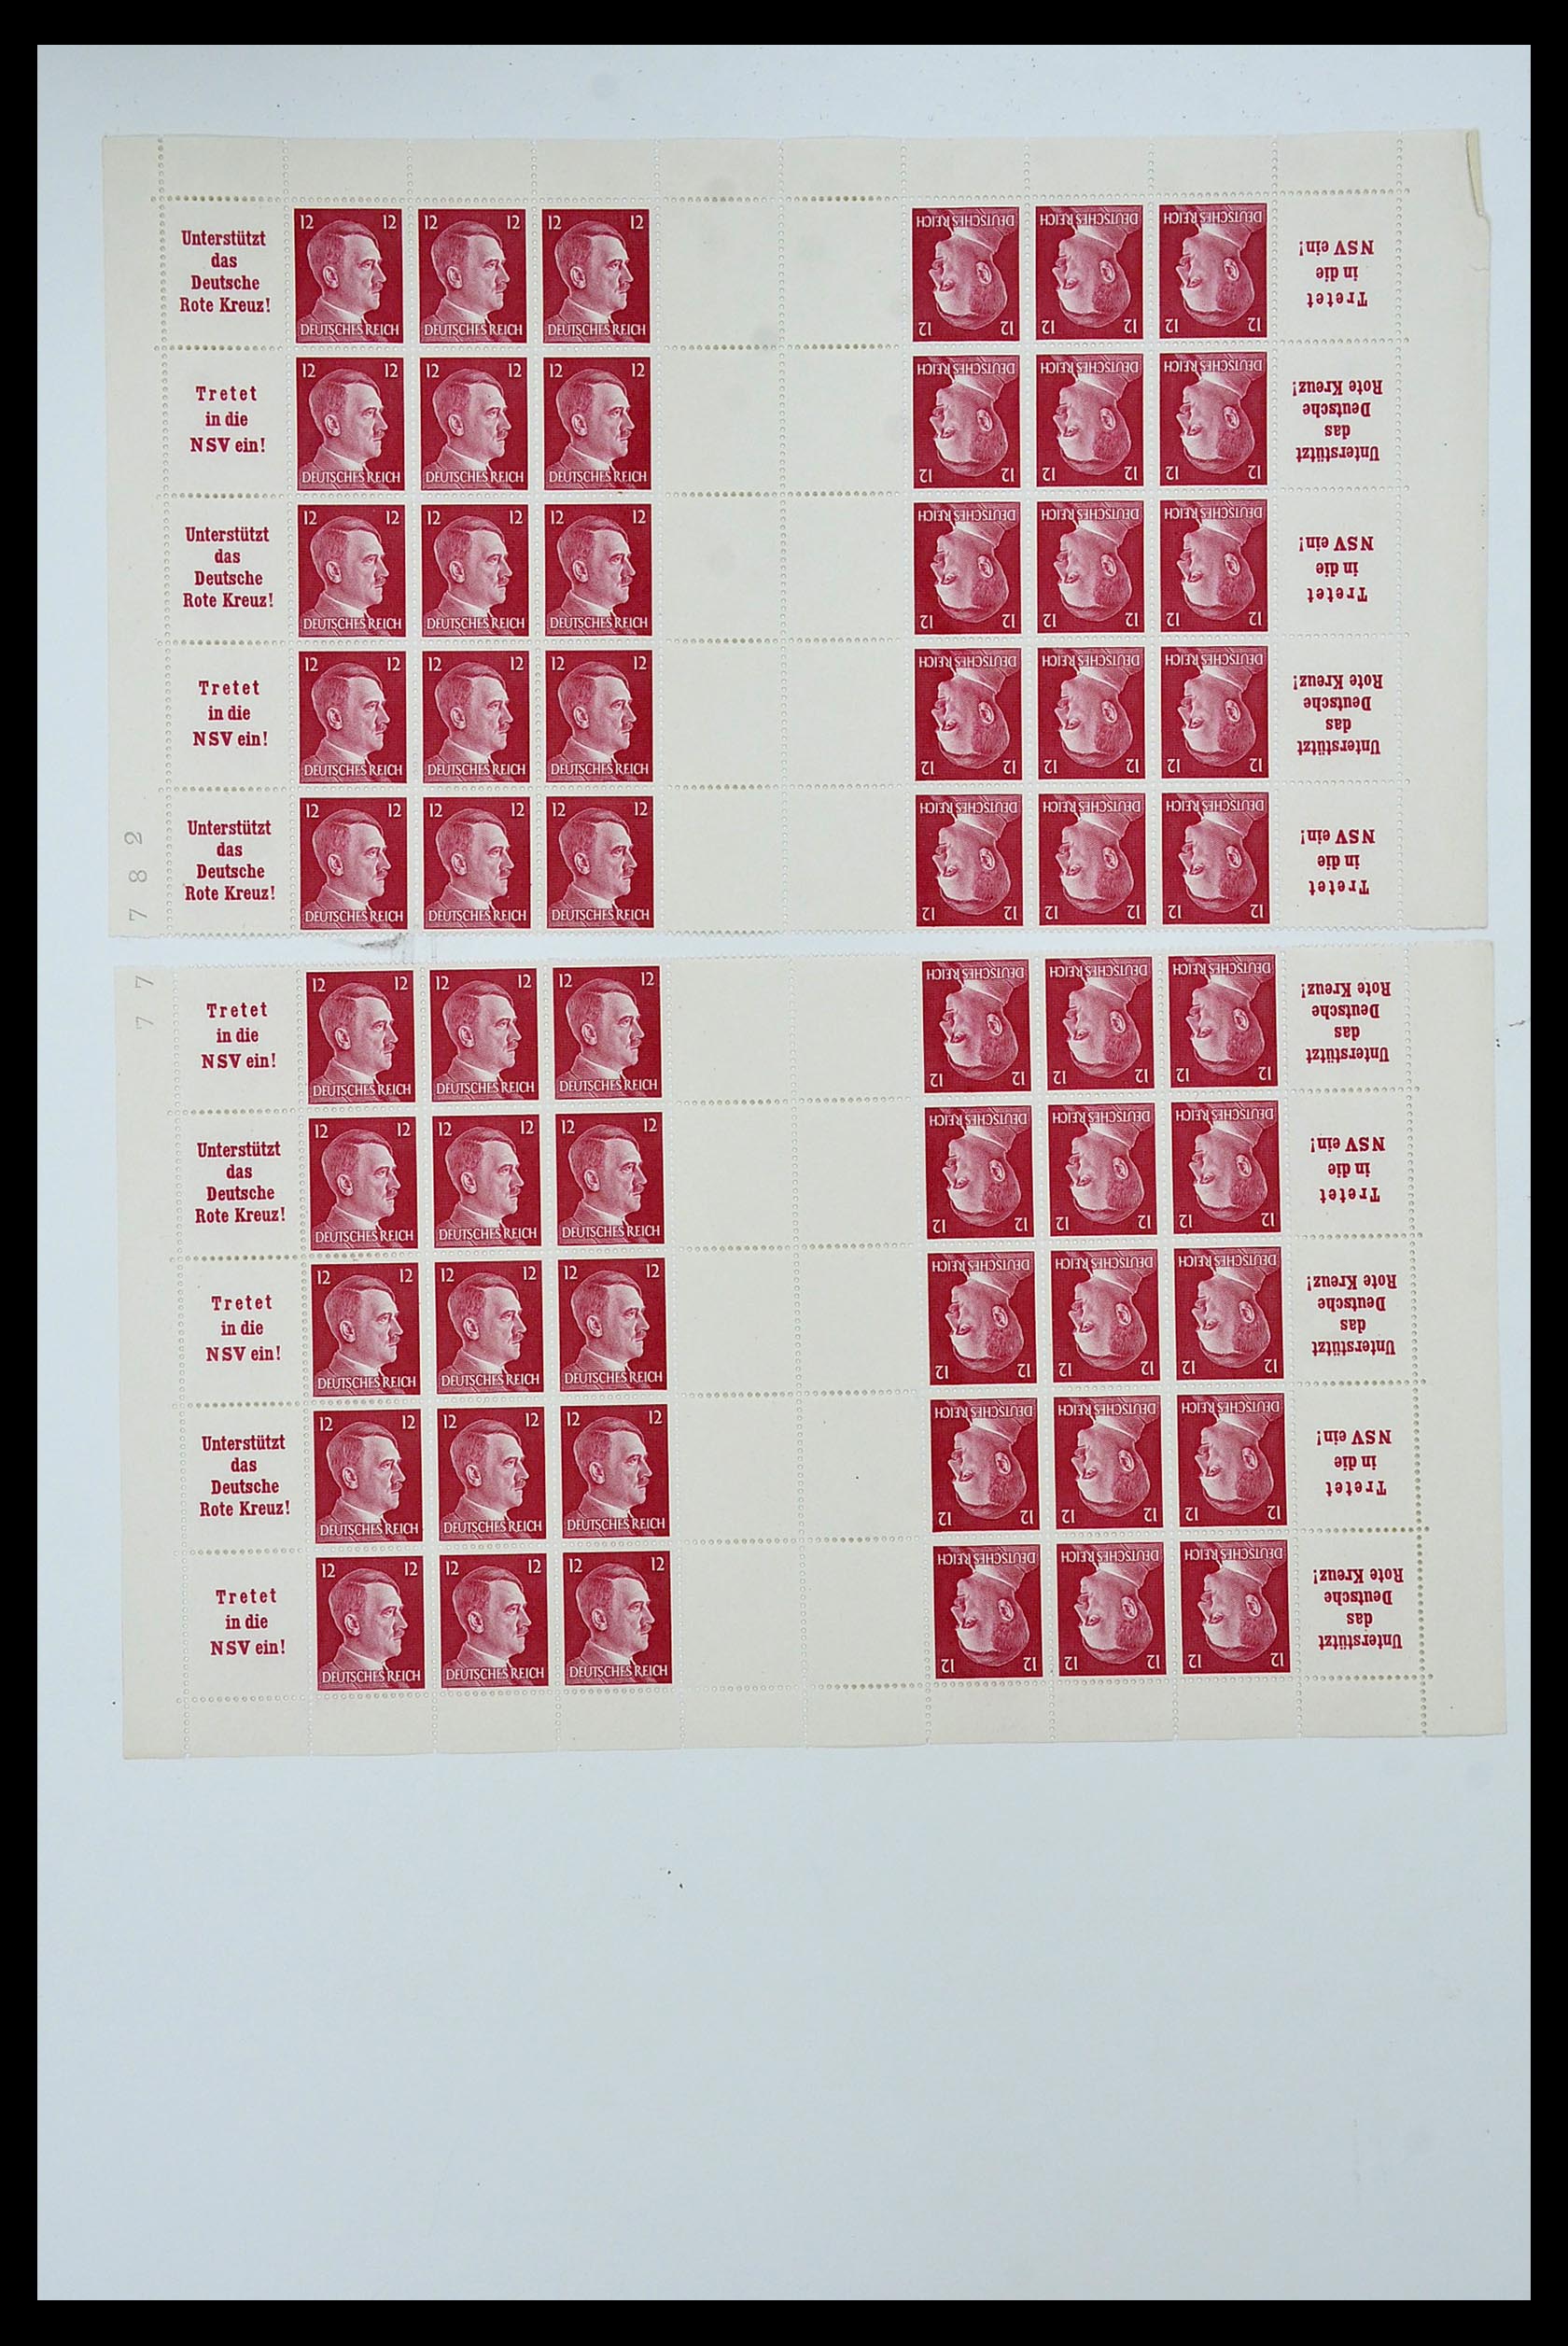 34164 083 - Stamp collection 34164 German Reich Markenheftchenbogen 1933-1942.